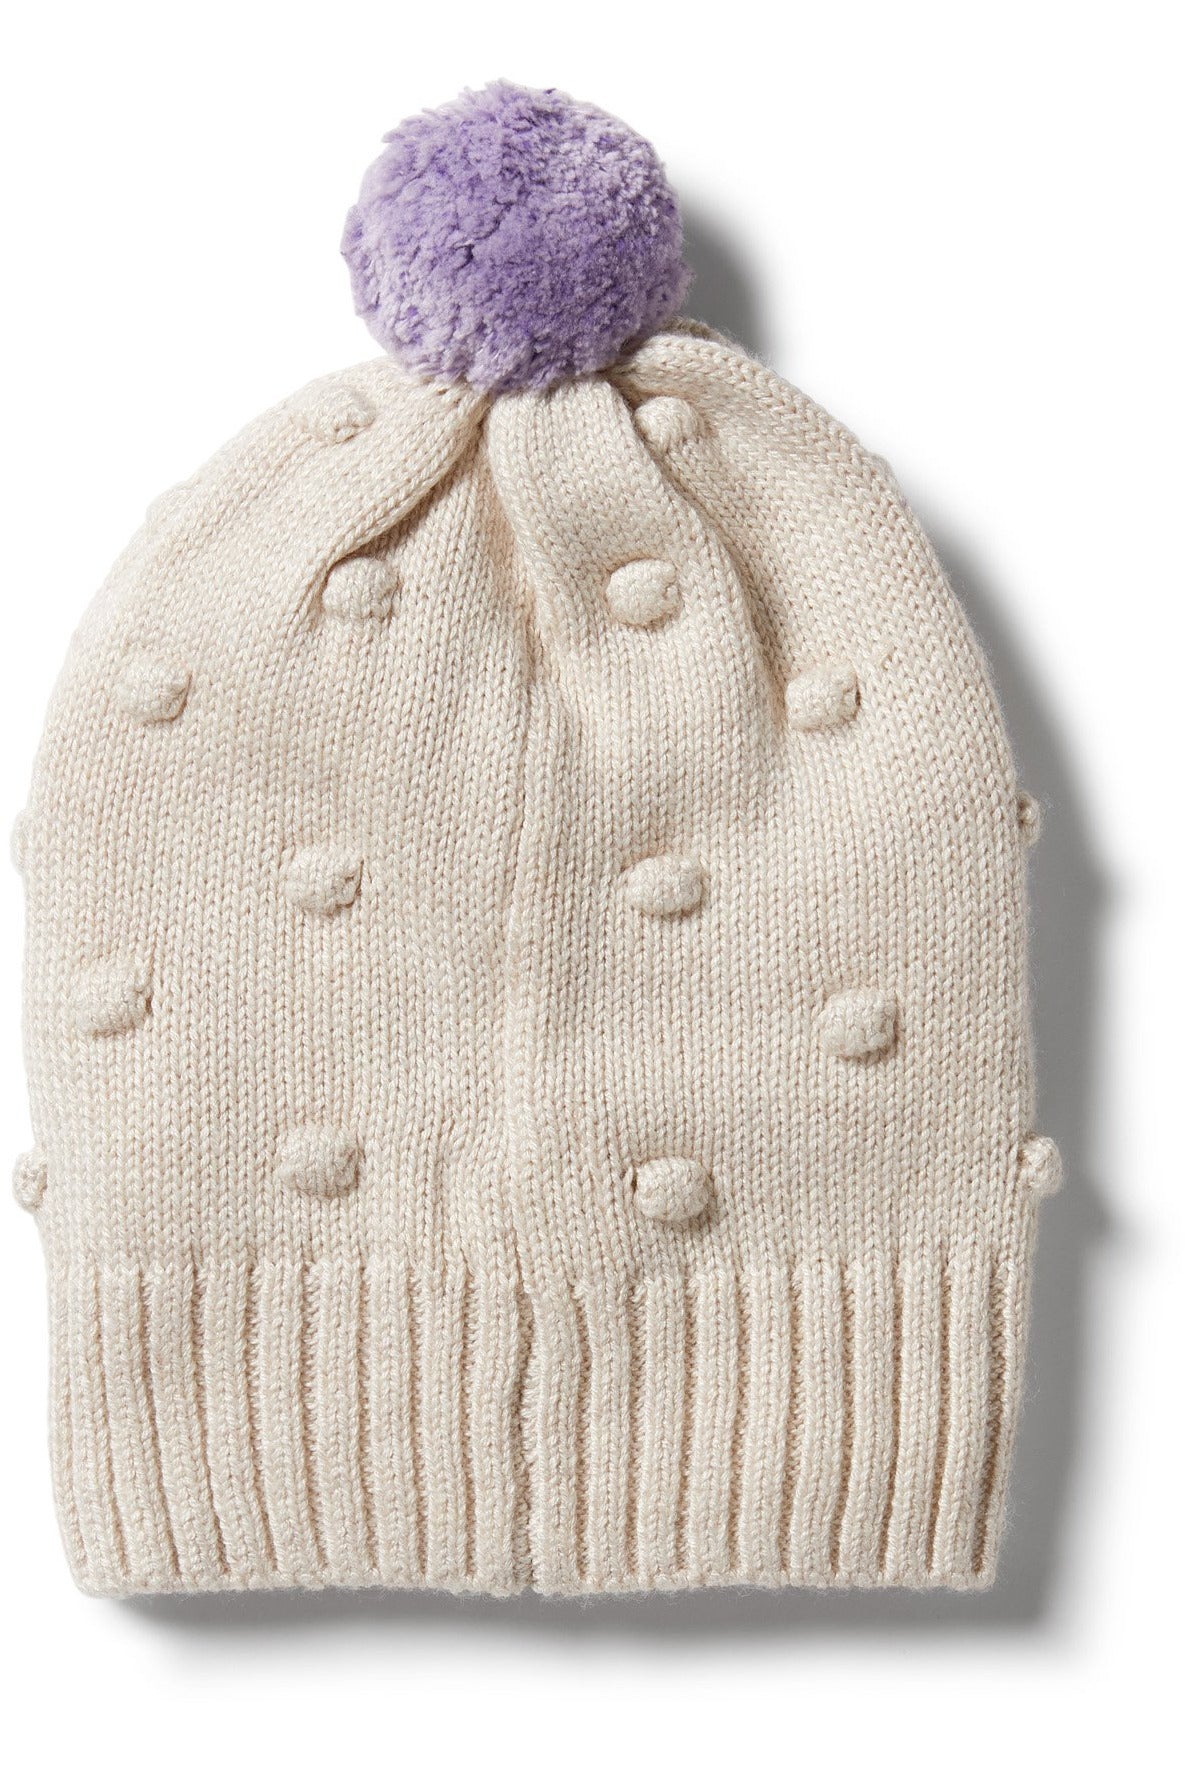 Knitted Spot Jacquard Hat - Oatmeal Melange